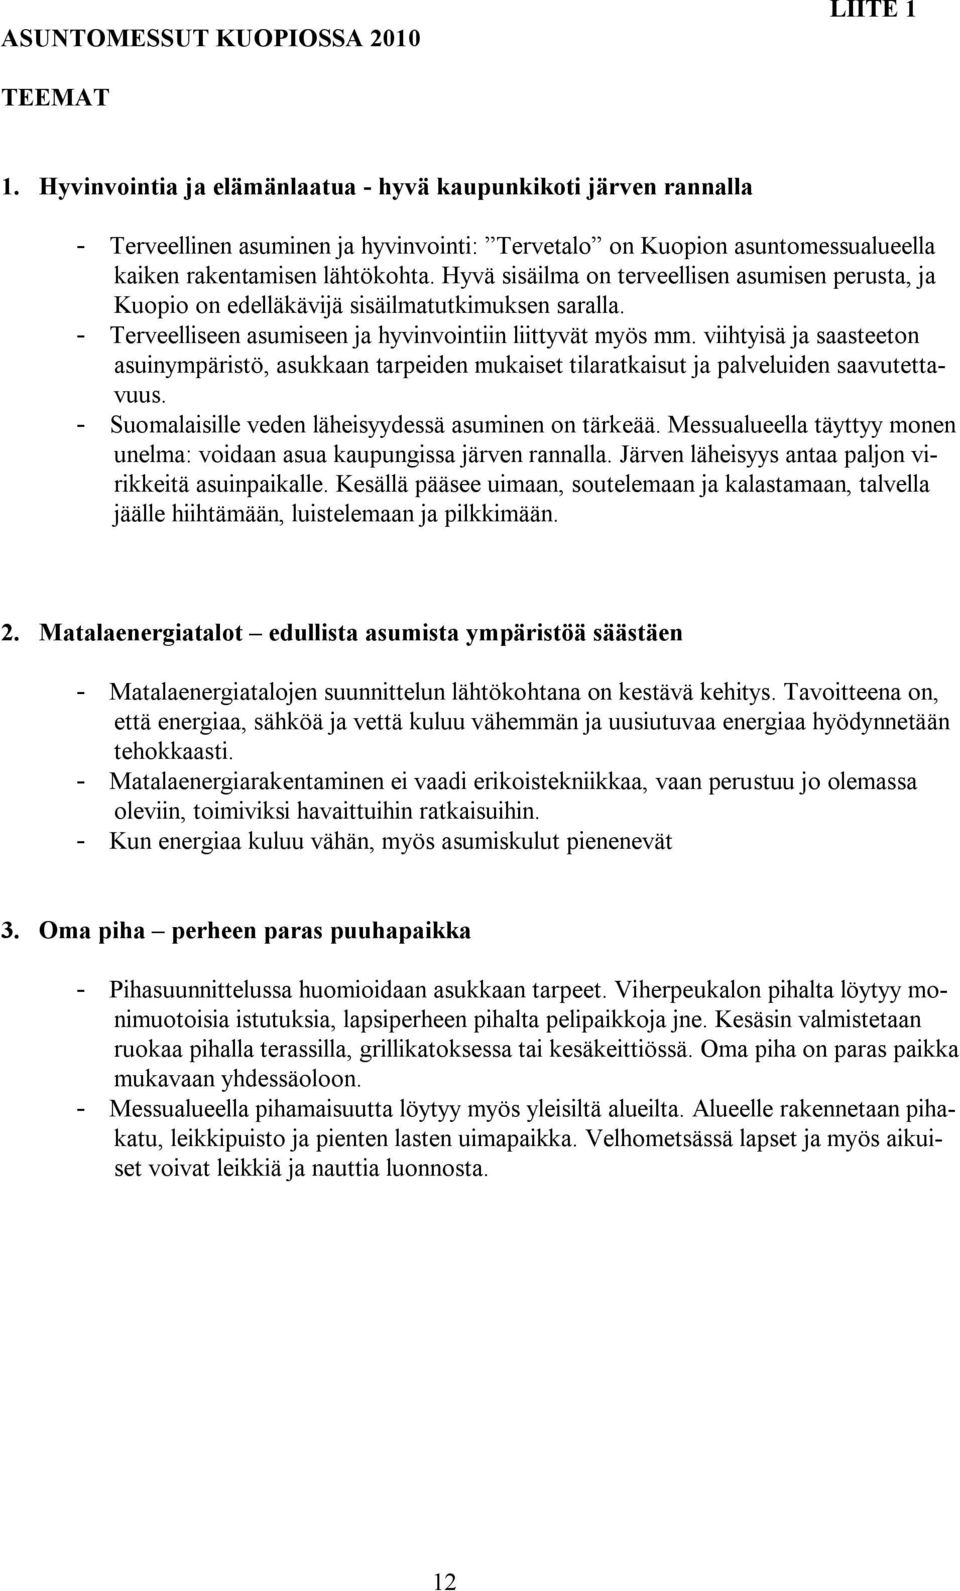 Hyvä sisäilma on terveellisen asumisen perusta, ja Kuopio on edelläkävijä sisäilmatutkimuksen saralla. - Terveelliseen asumiseen ja hyvinvointiin liittyvät myös mm.